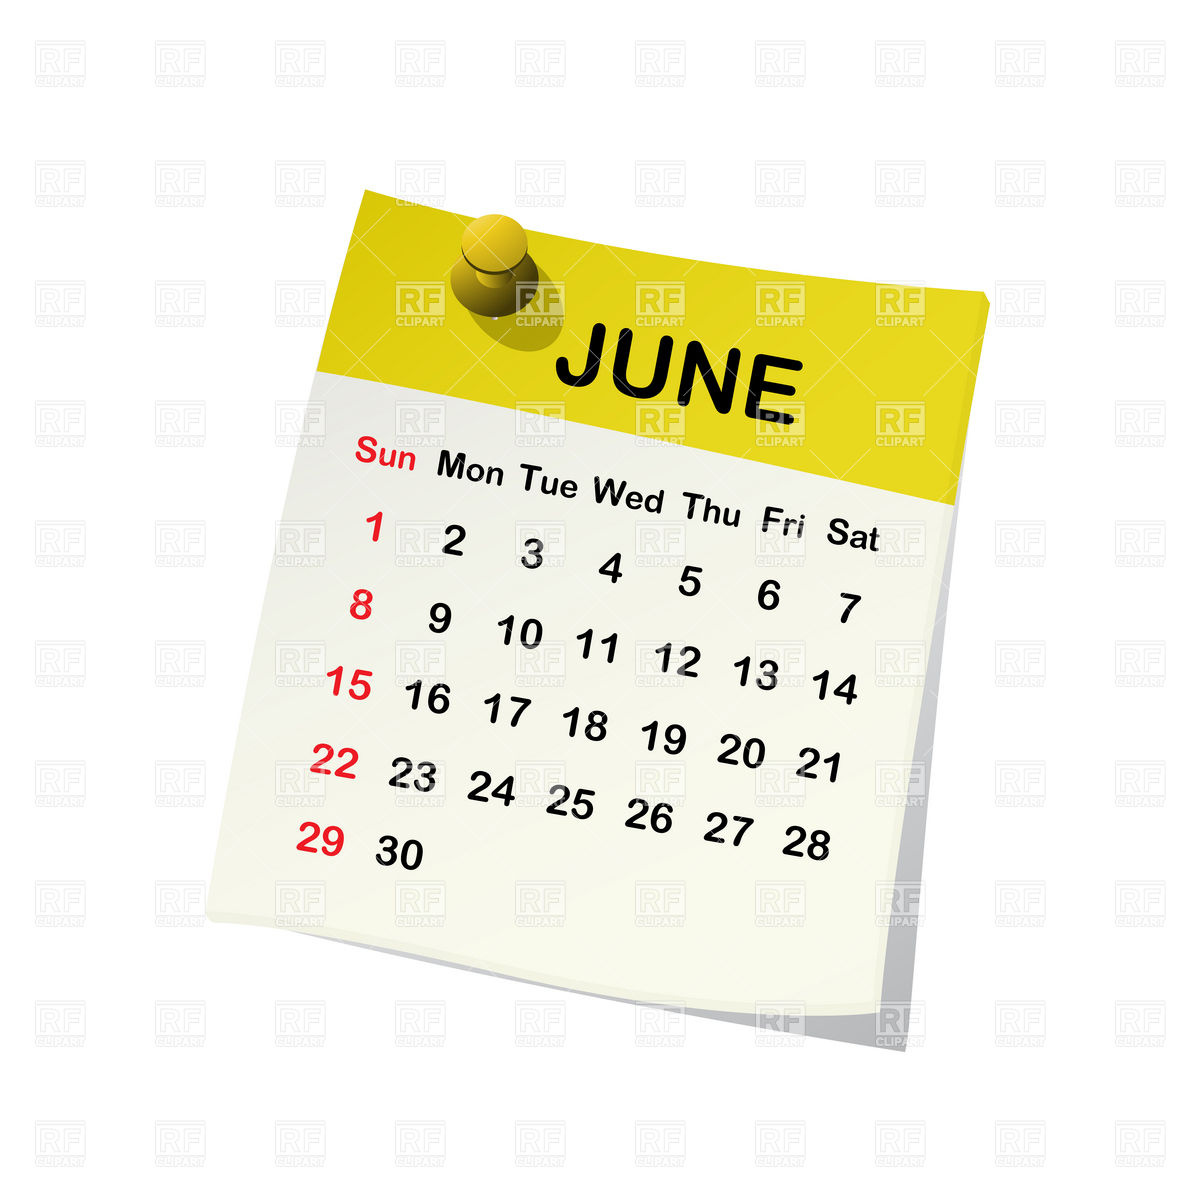 June 2014 Month Calendar .